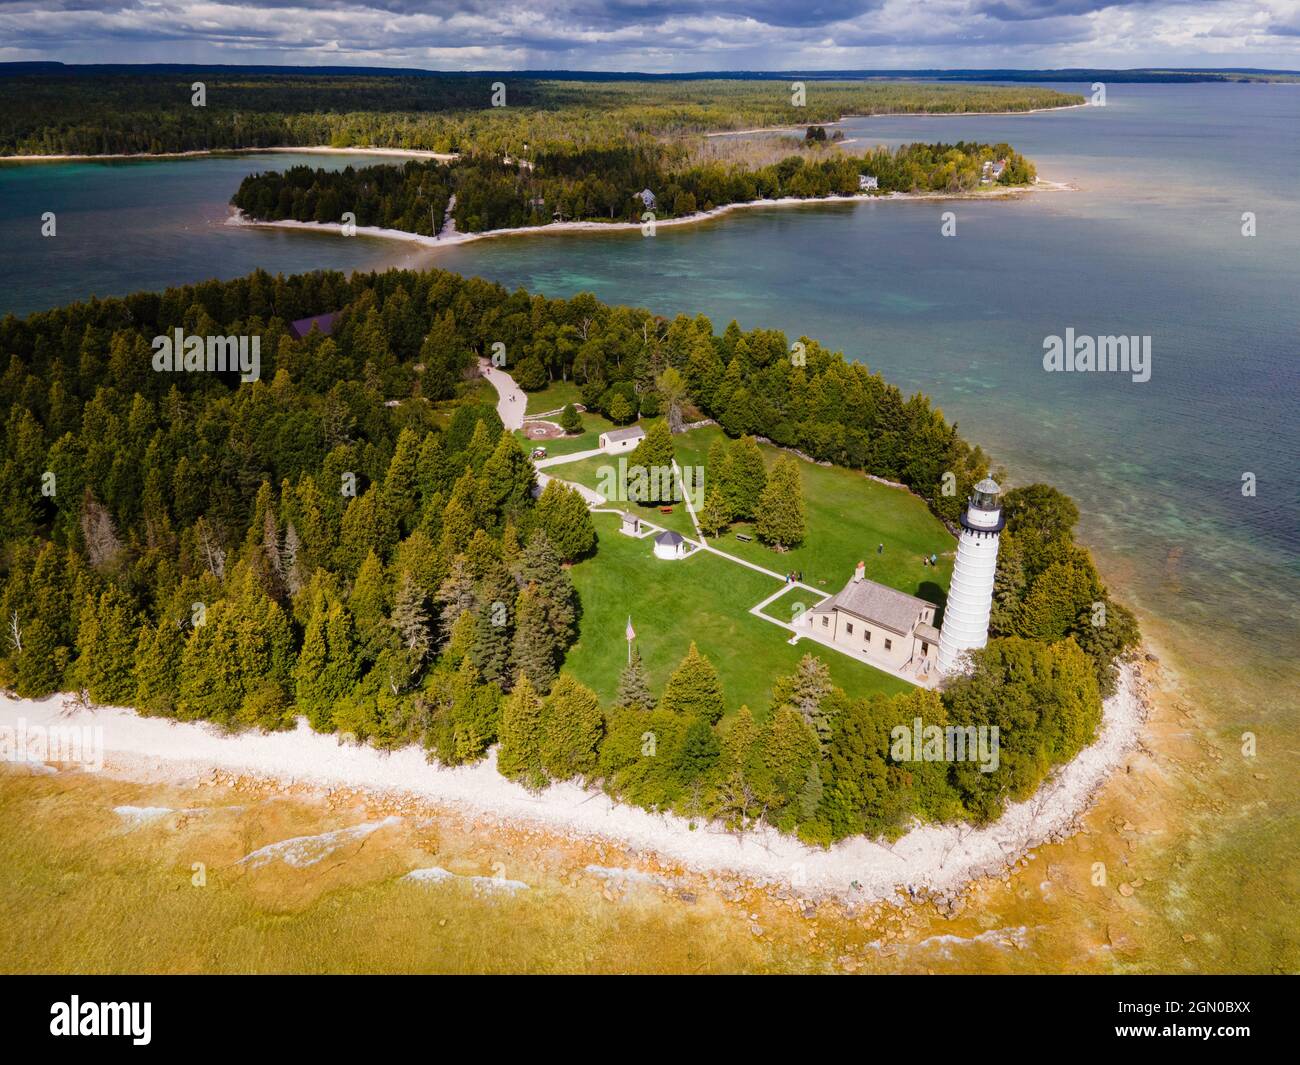 Photographie du phare de Cana Island, Parc du comté de Cana Island, comté de Door, Wisconsin, États-Unis. Banque D'Images